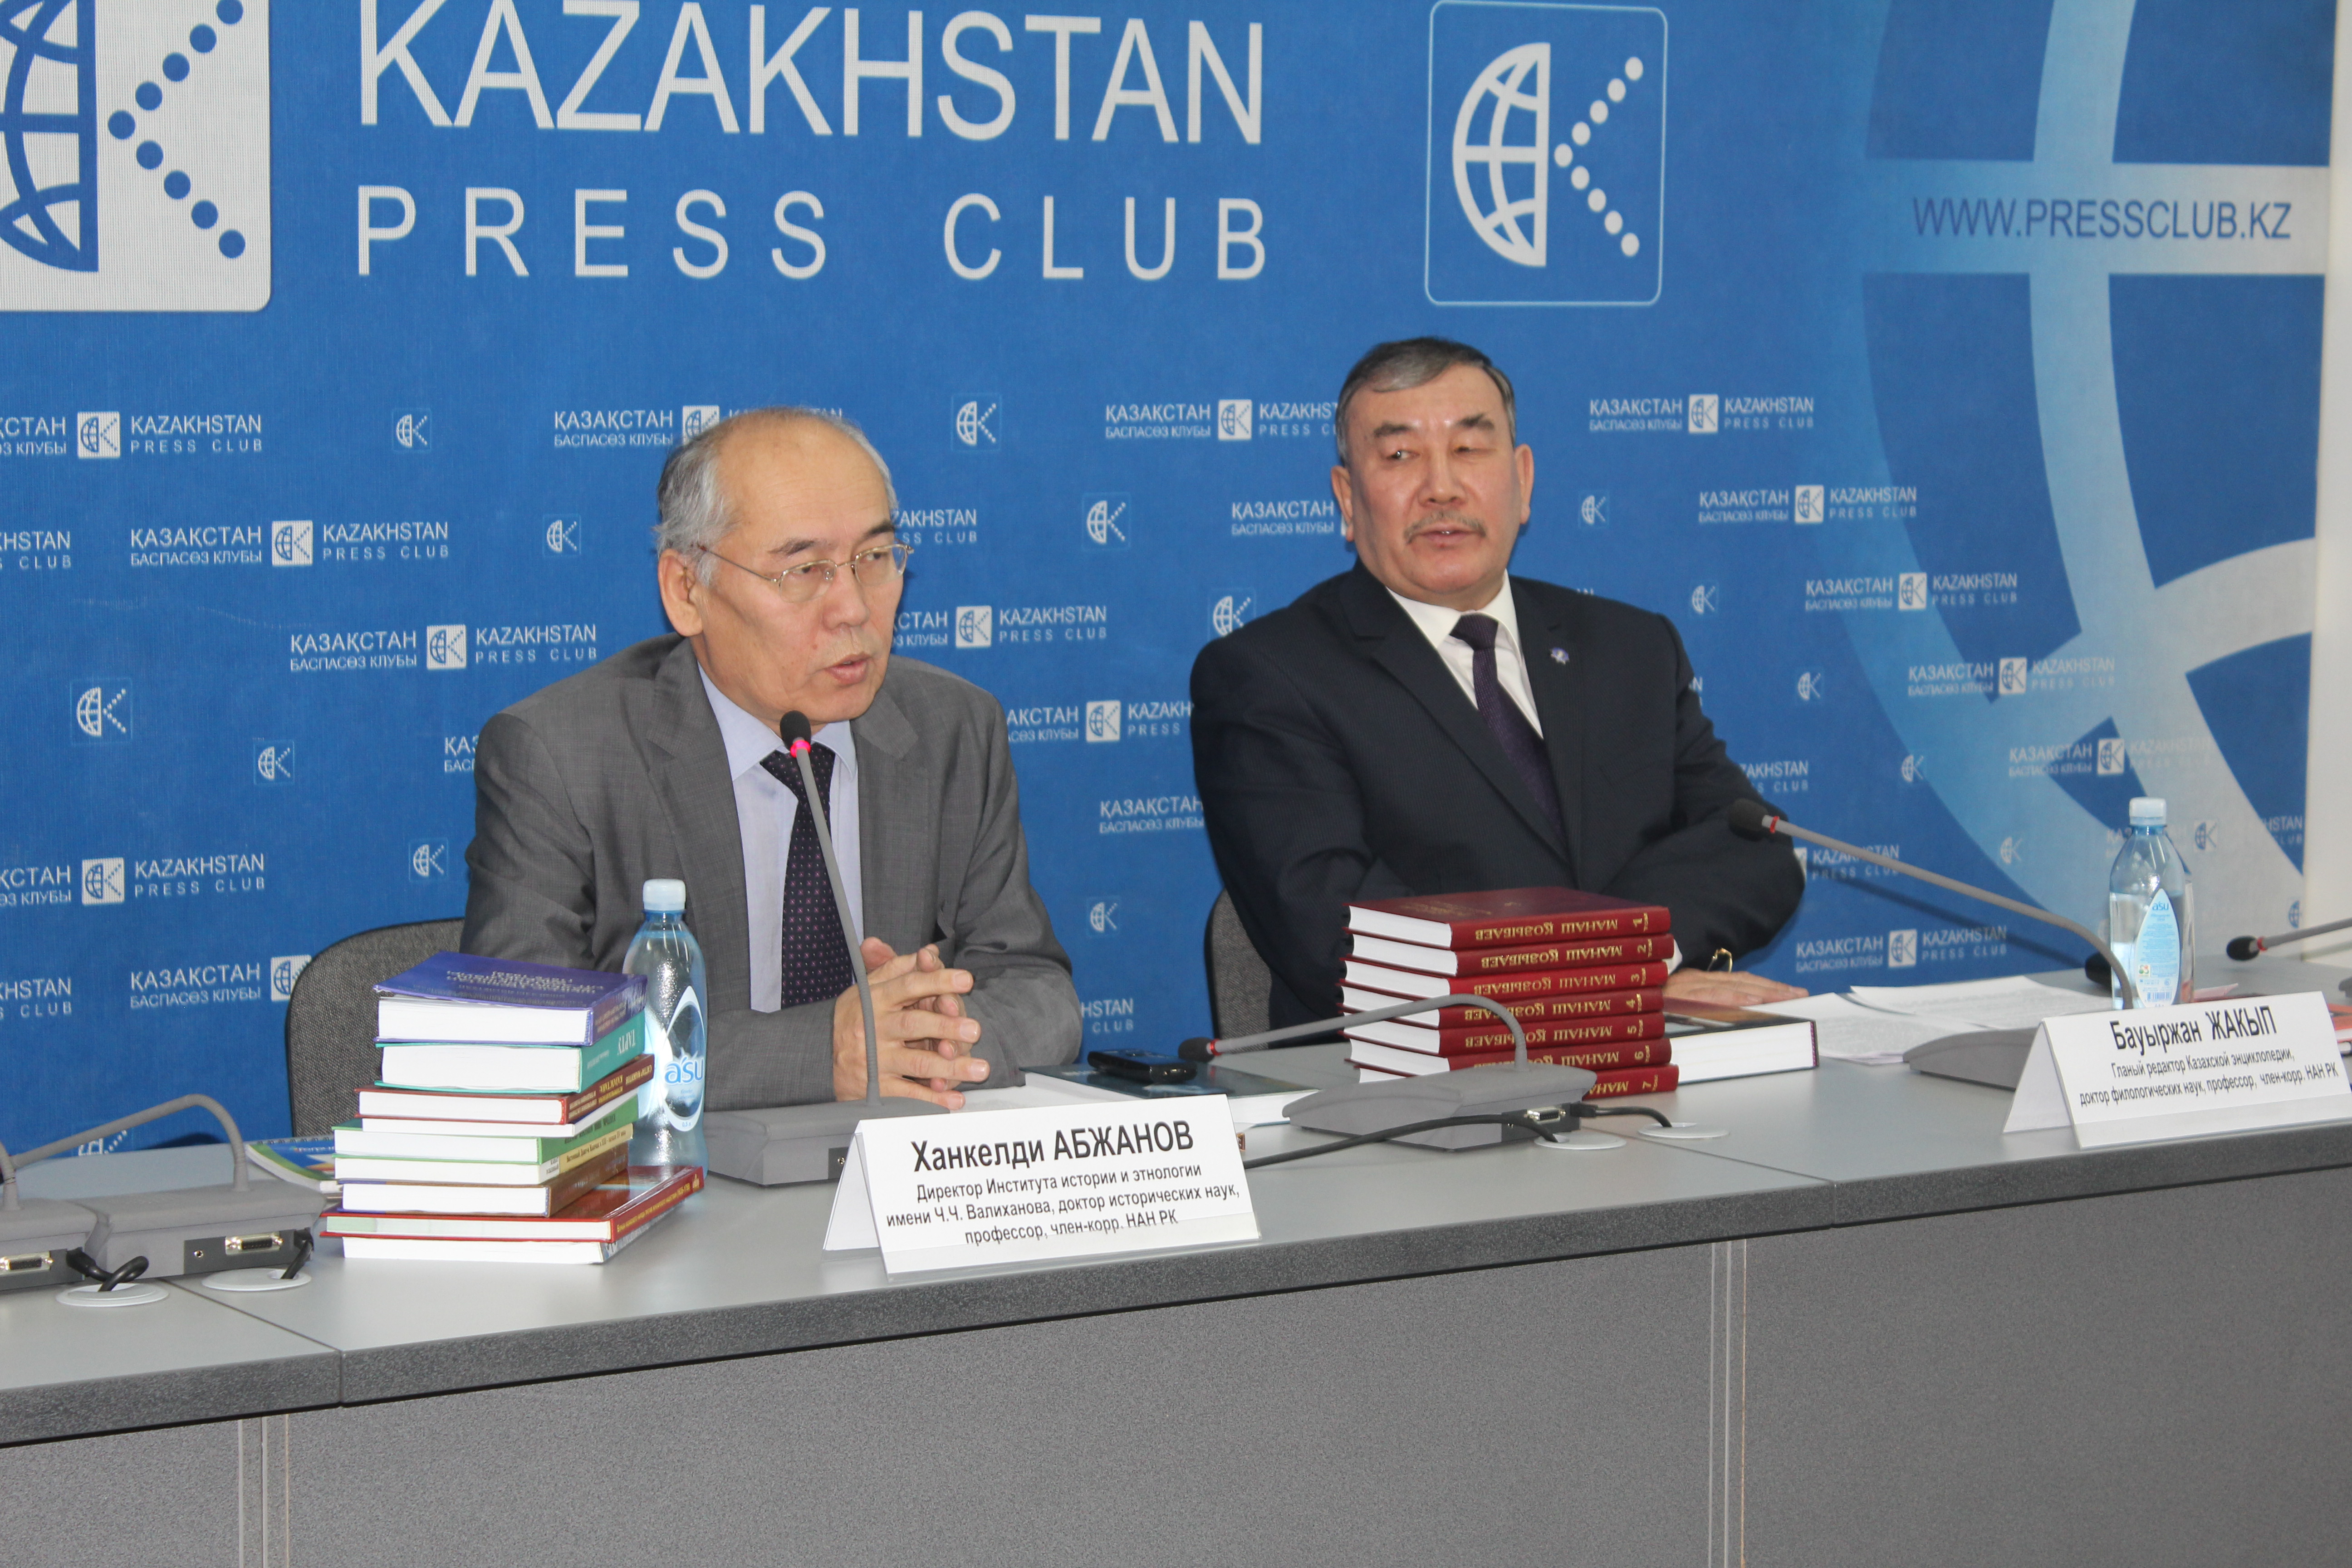 Presentation of the book "Kazak kaida bara zhatyr? Rayymzhan Marsekov"